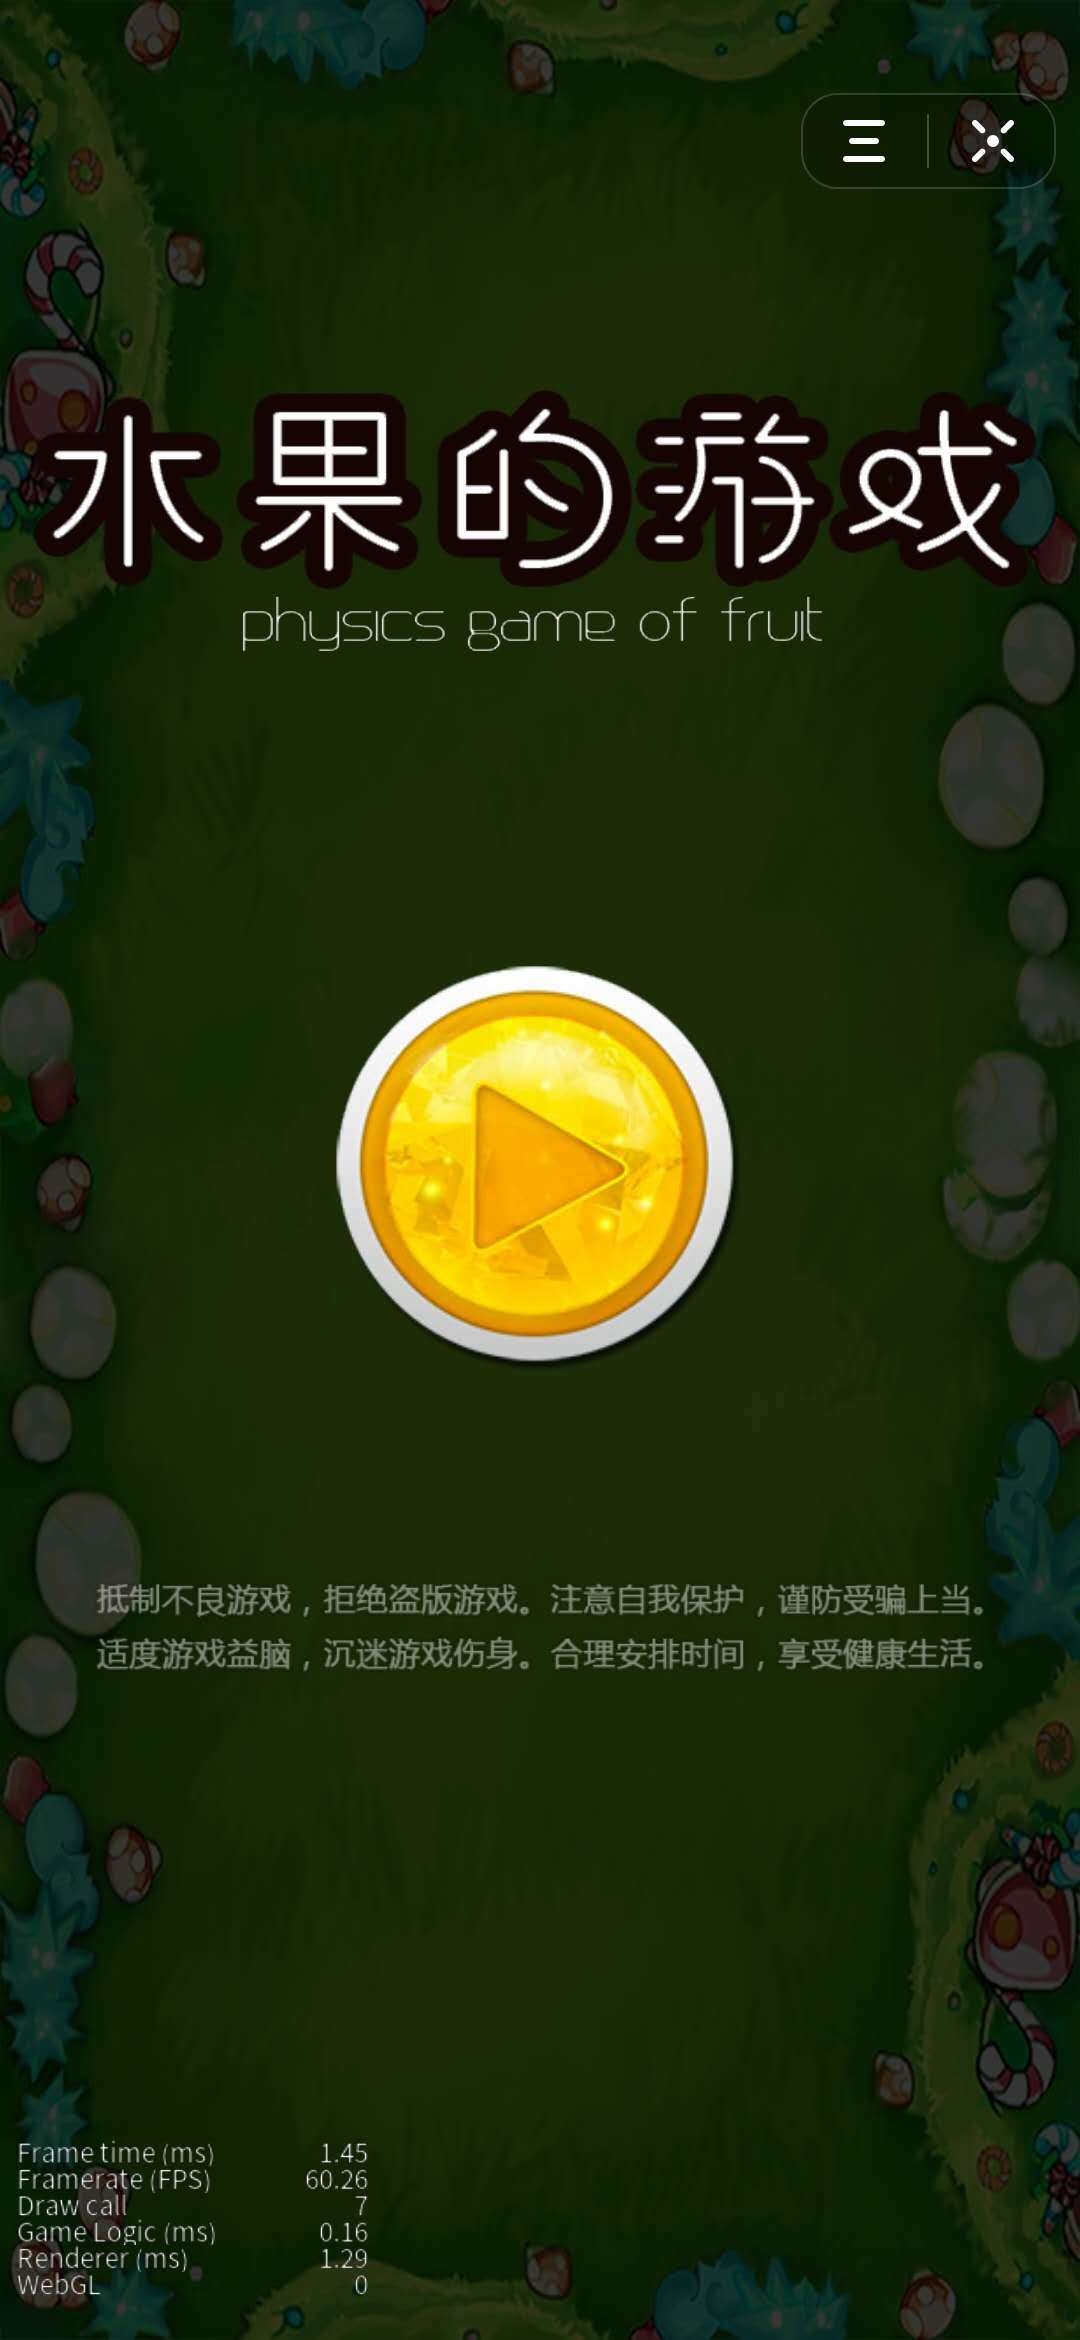 Screenshot 1 of permainan buah-buahan 2.0